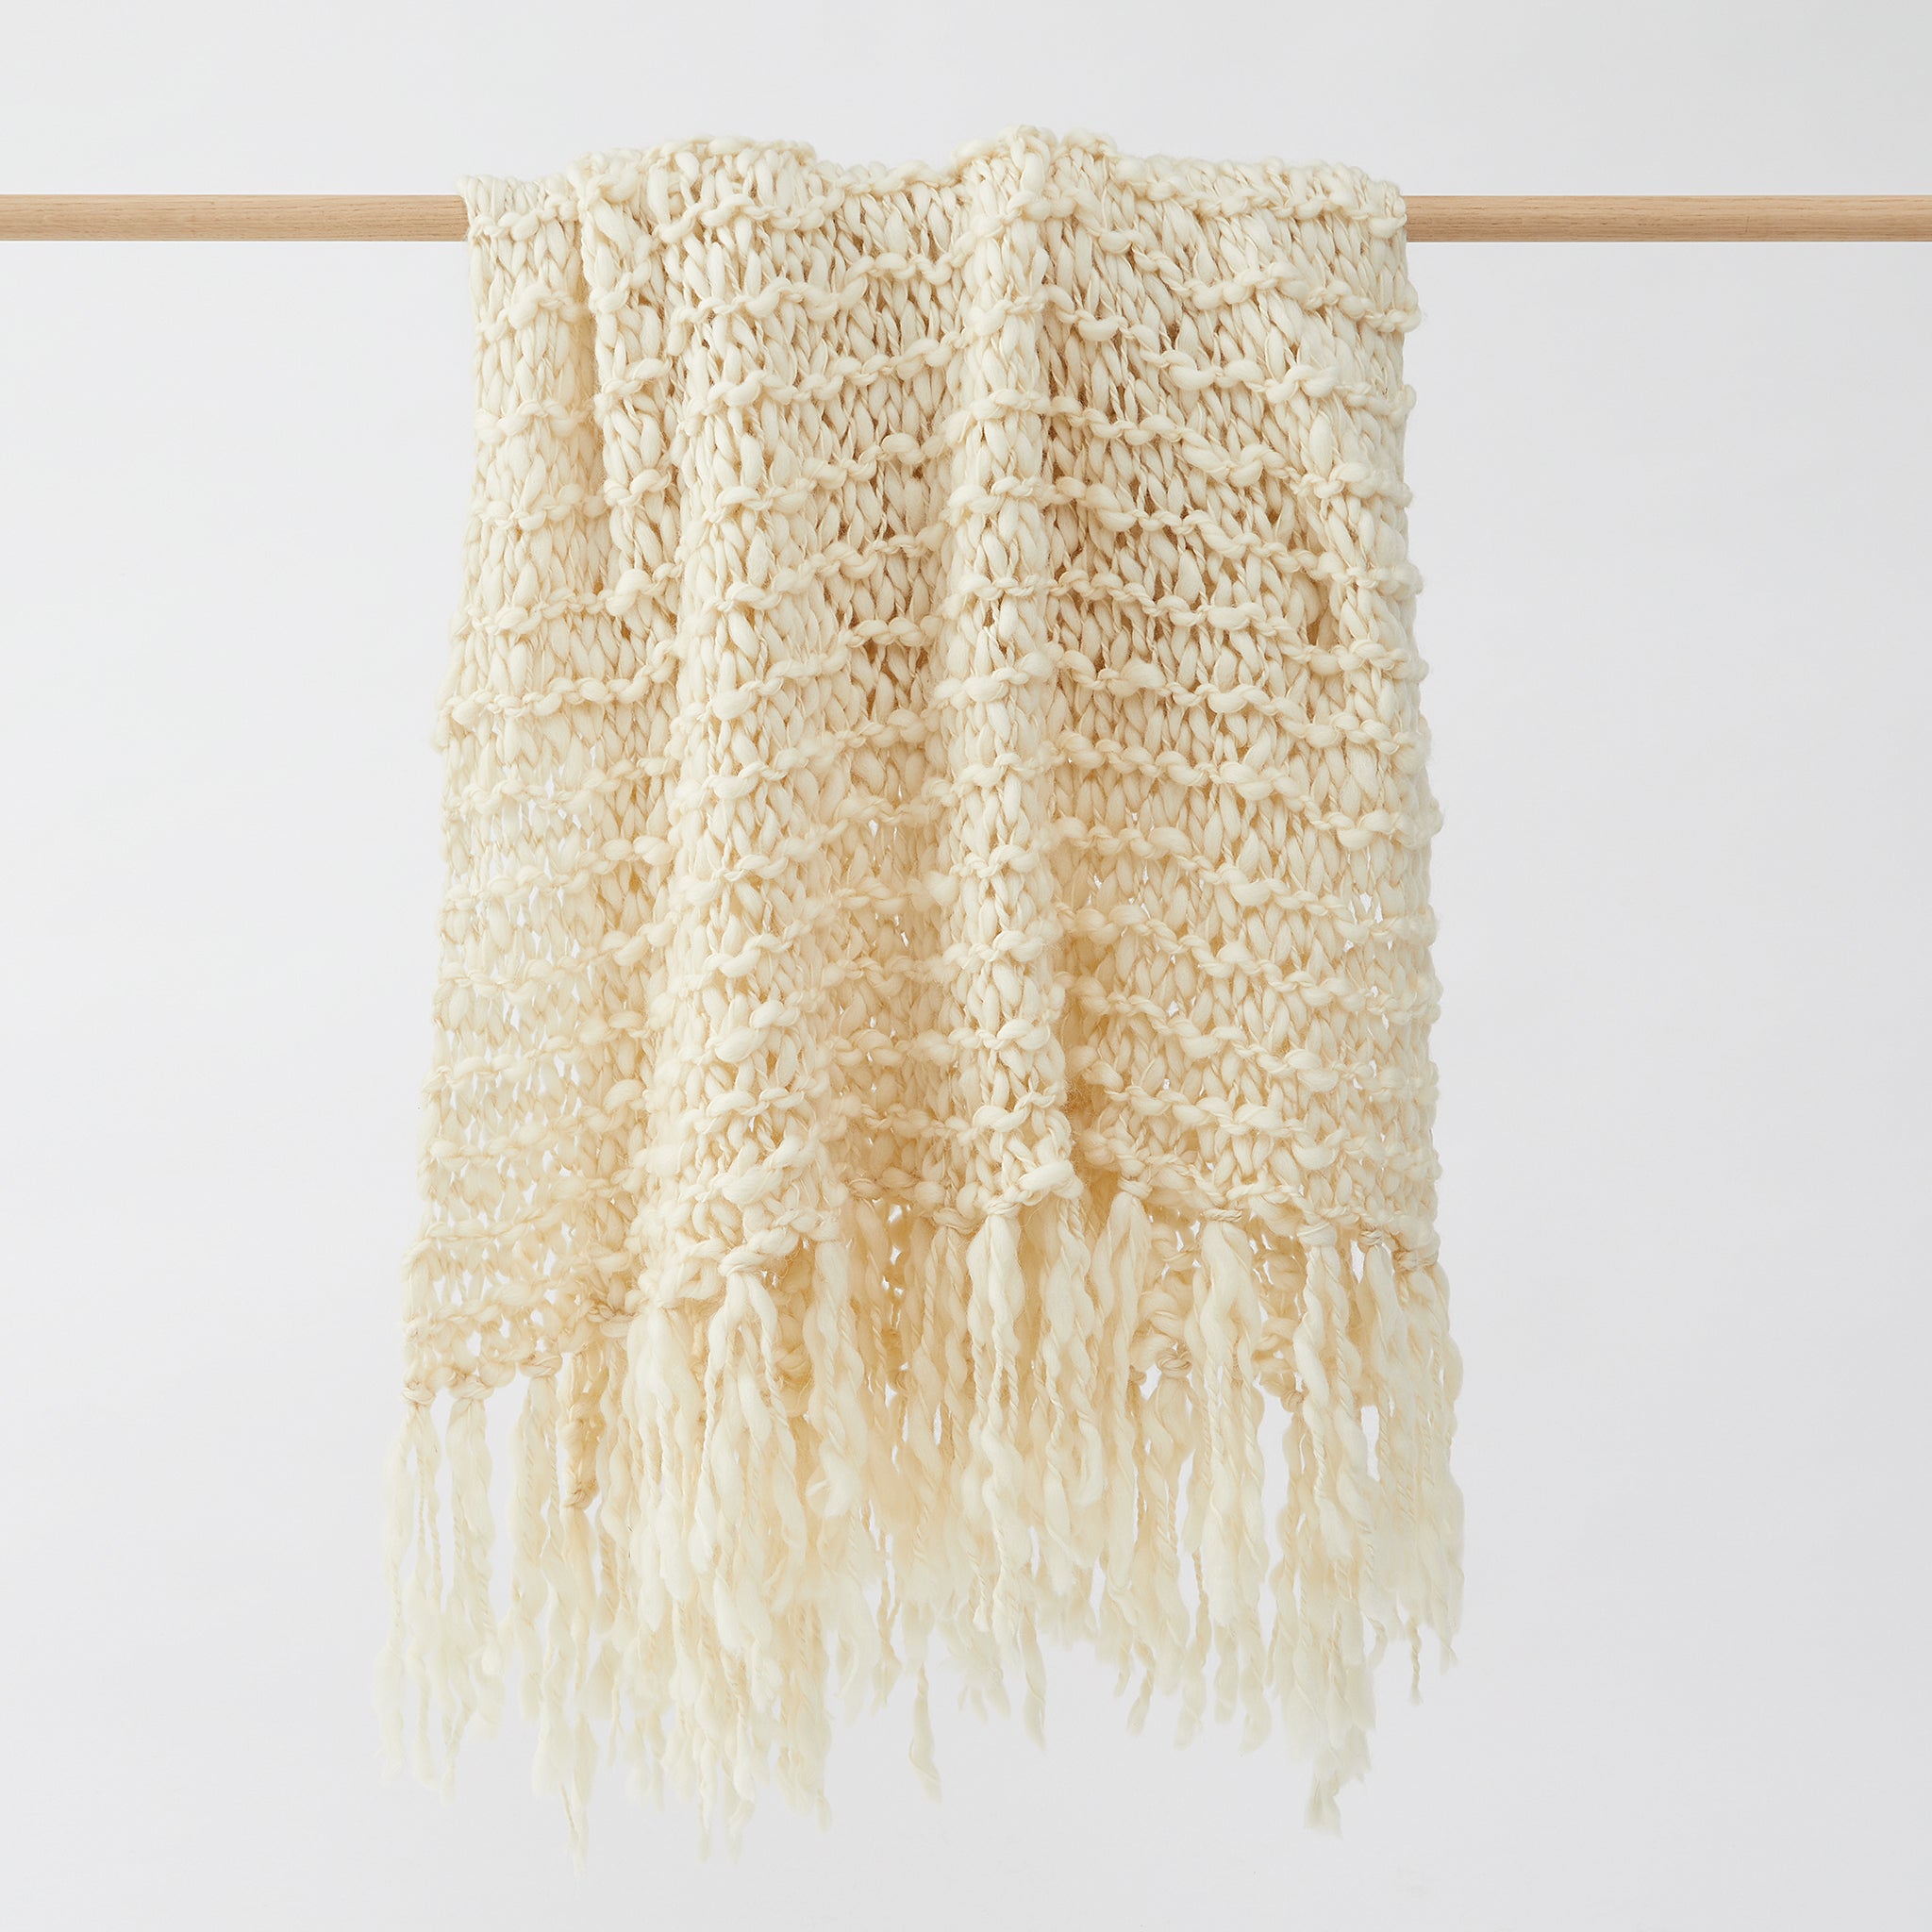 Handgewebte Merino Wolldecke Animaná. Diese Decke aus 100 % Merino-Biowolle aus Patagonien ist himmlisch weich und hat ein großes, offenes Gewebe, das eine einzigartige Textur erzeugt. 